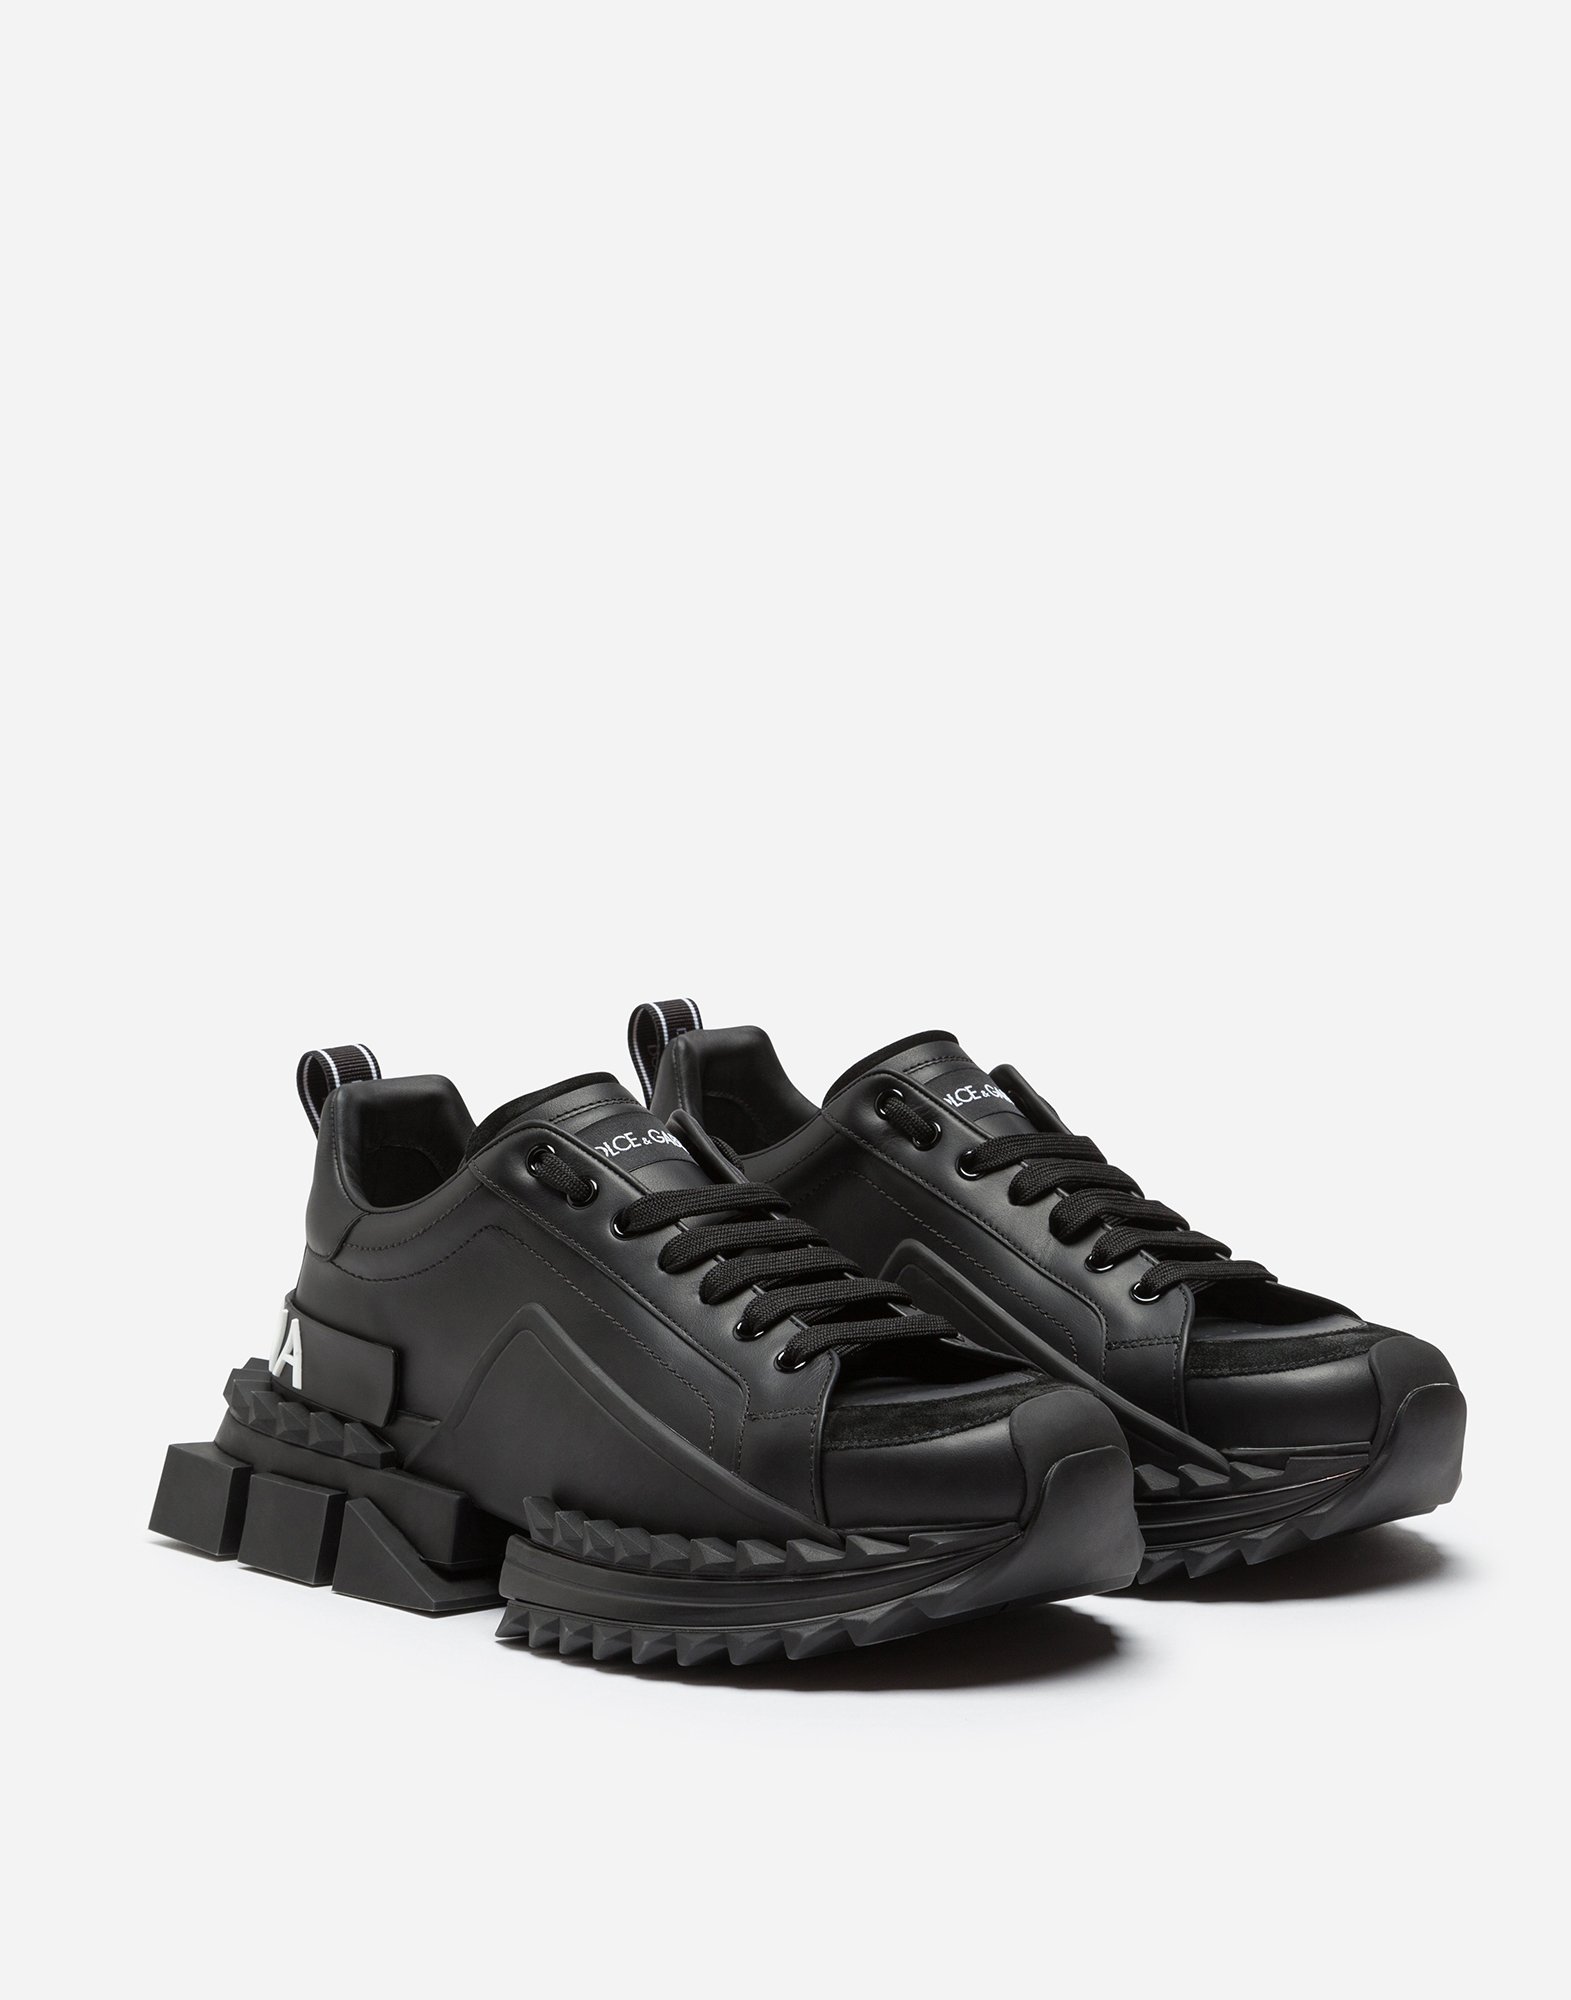 d&g shoes black